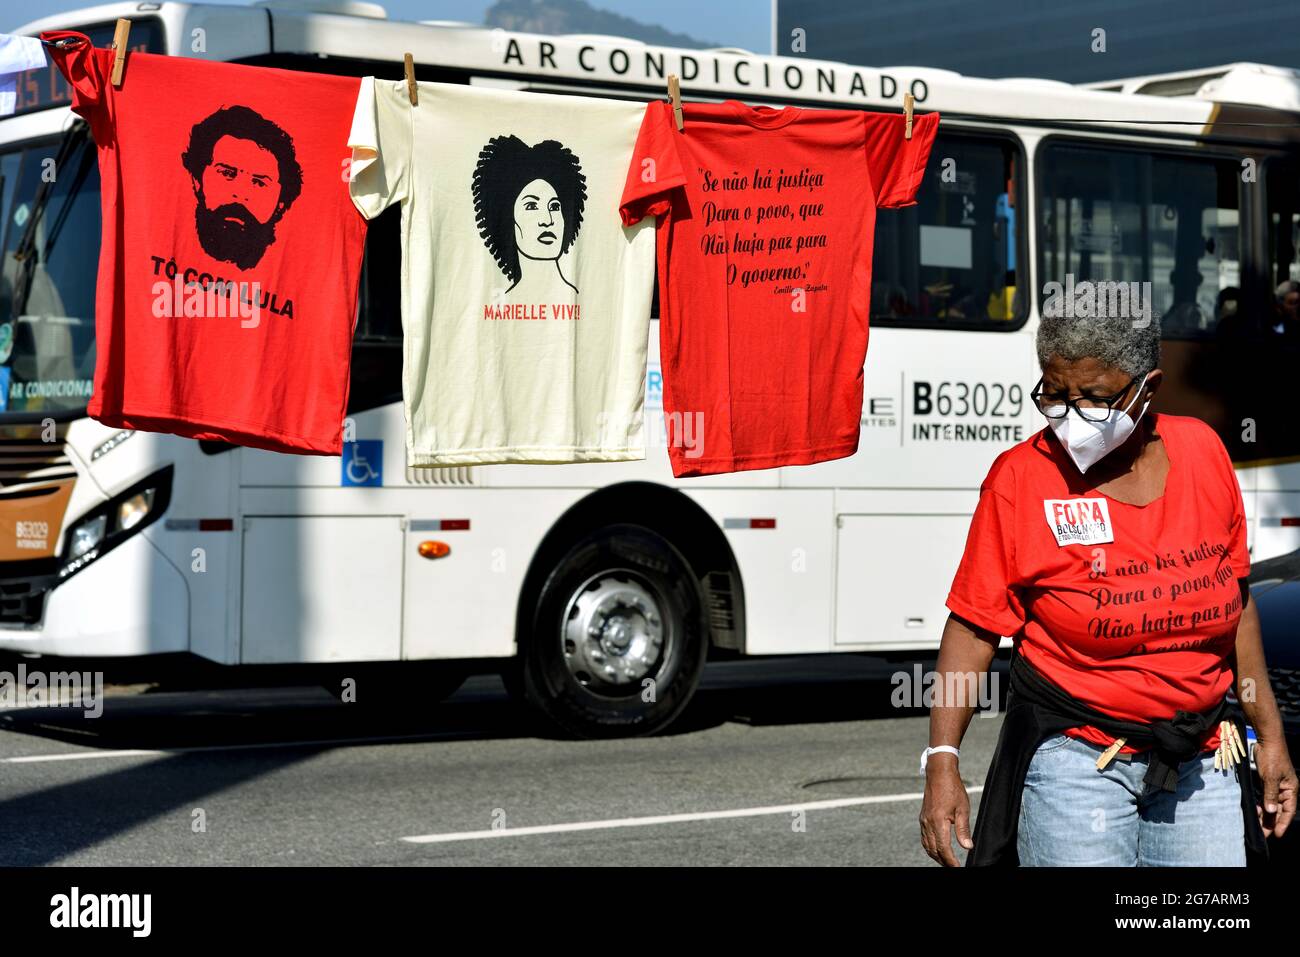 Brésil – 3 juillet 2021 : des vendeurs de rue vendent des t-shirts représentant des slogans anti-Bolsonaro lors d'une manifestation contre le président brésilien qui s'est tenue à Rio de Janeiro Banque D'Images